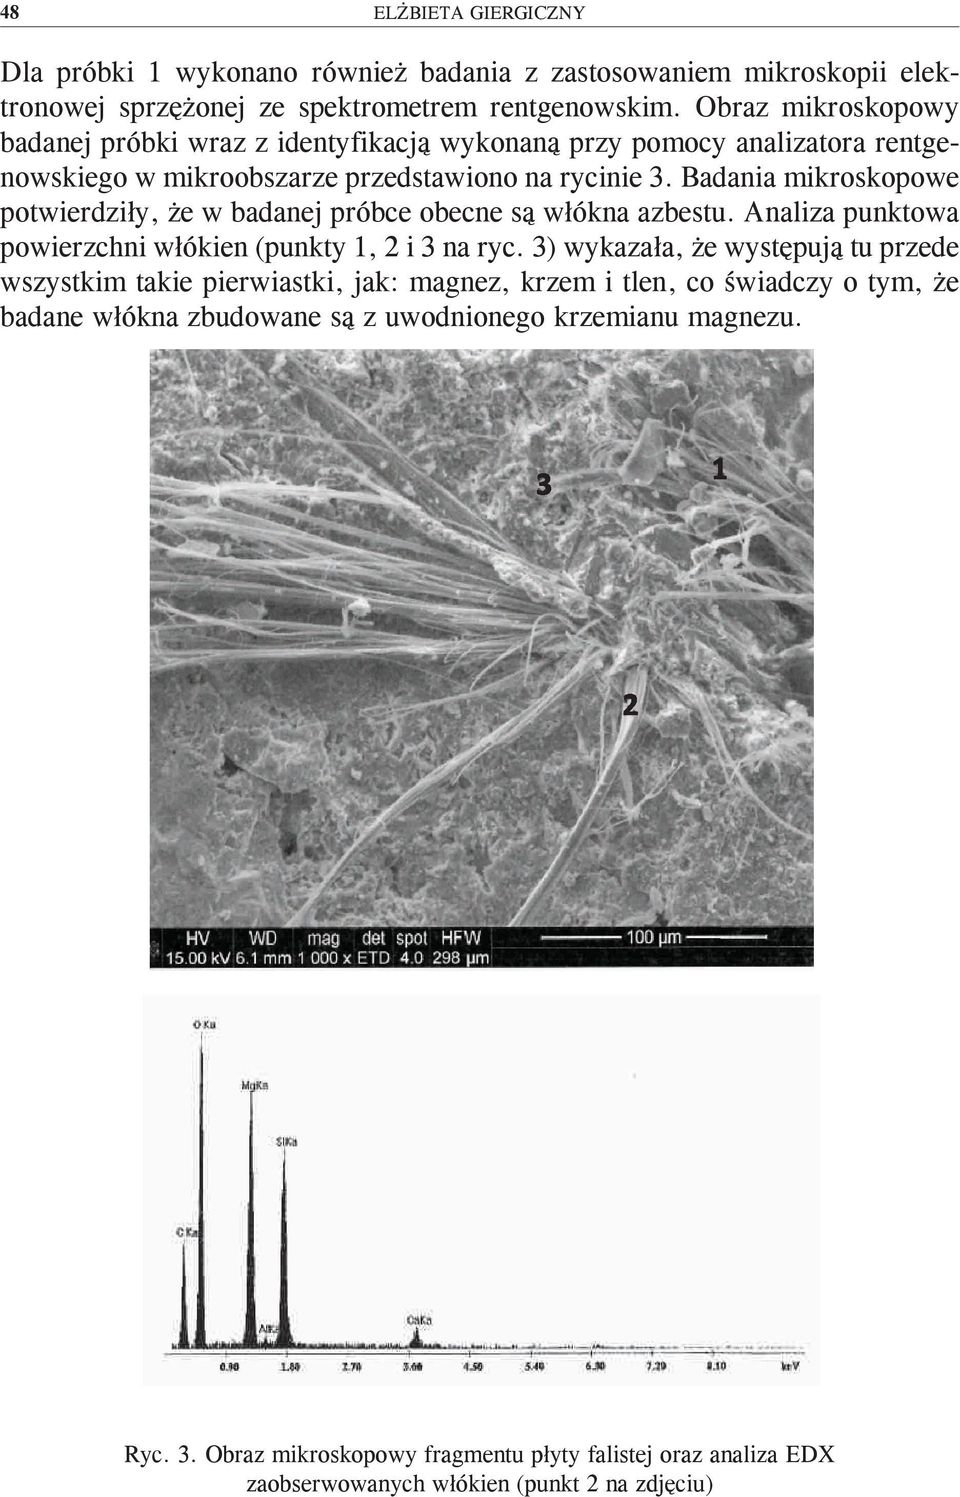 Badania mikroskopowe potwierdziły, że w badanej próbce obecne są włókna azbestu. Analiza punktowa powierzchni włókien (punkty 1, 2 i 3 na ryc.